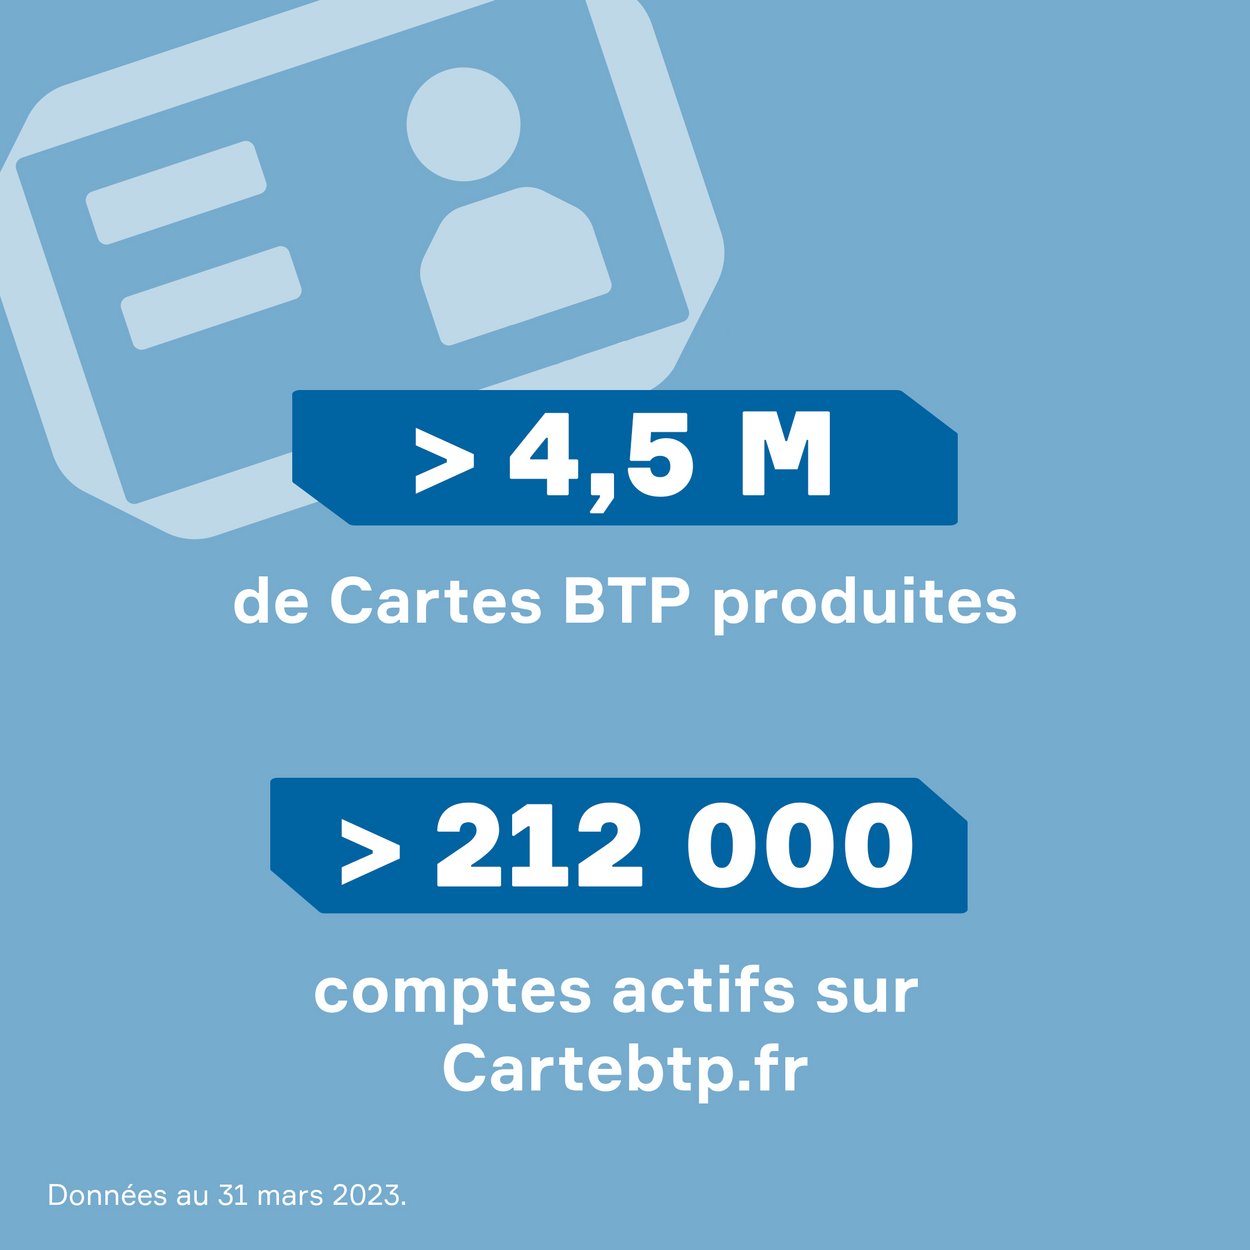 Texte "Plus de 4 millions de cartes BTP produites. Plus de 200 000 comptes actifs sur cartebtp.fr" proposé sur fond bleu gris. 